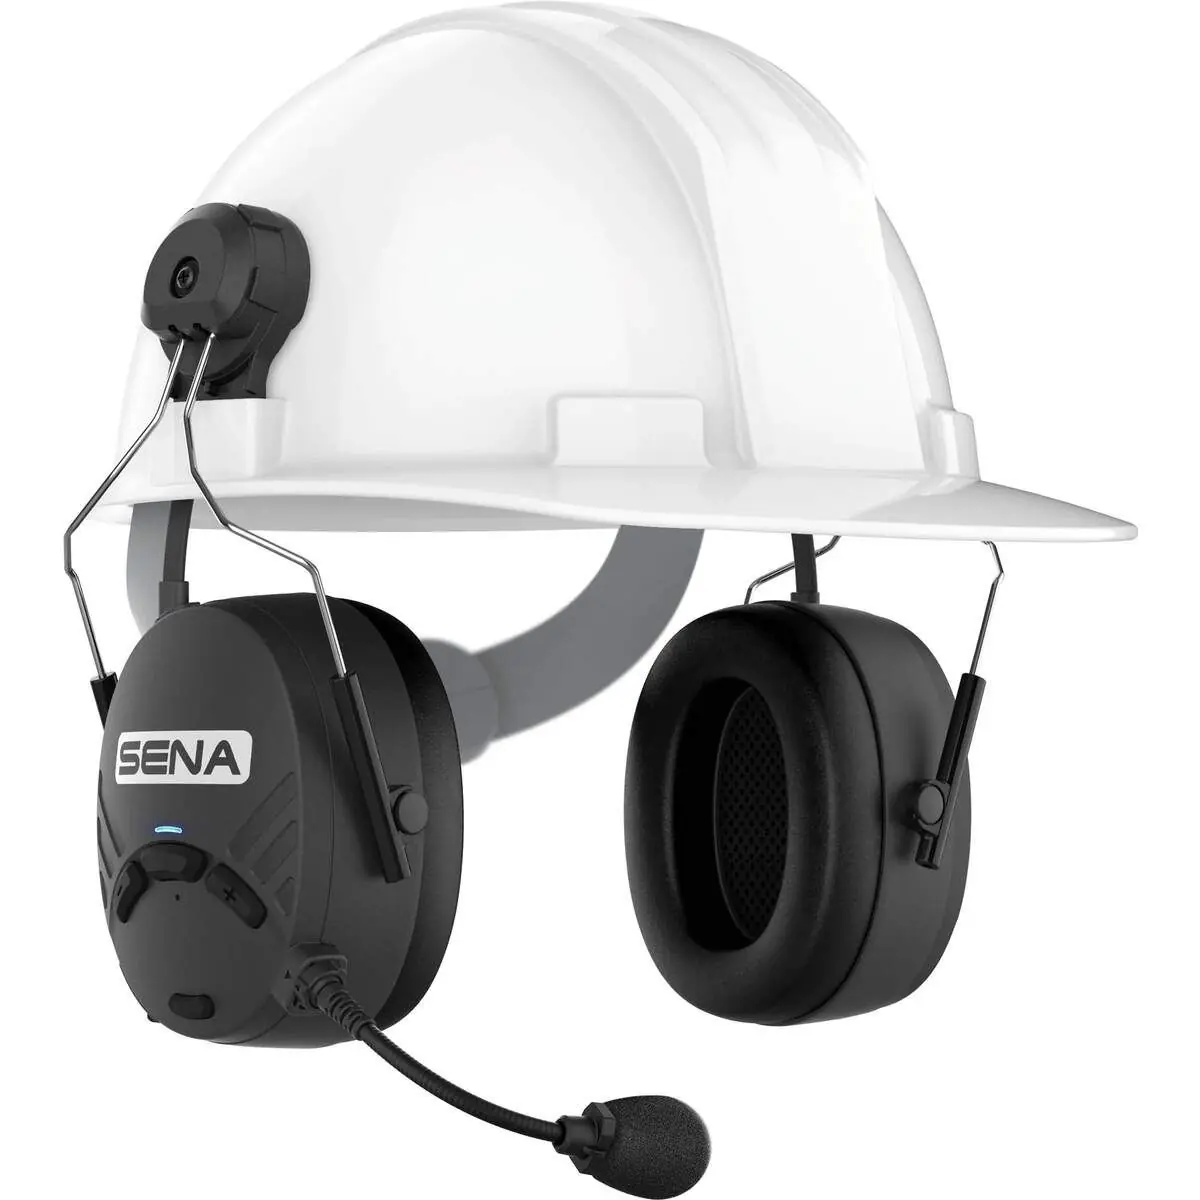 Sena Tufftalk M avec attache casque - casque anti-bruit avec système d'intercom - connexions illimitées